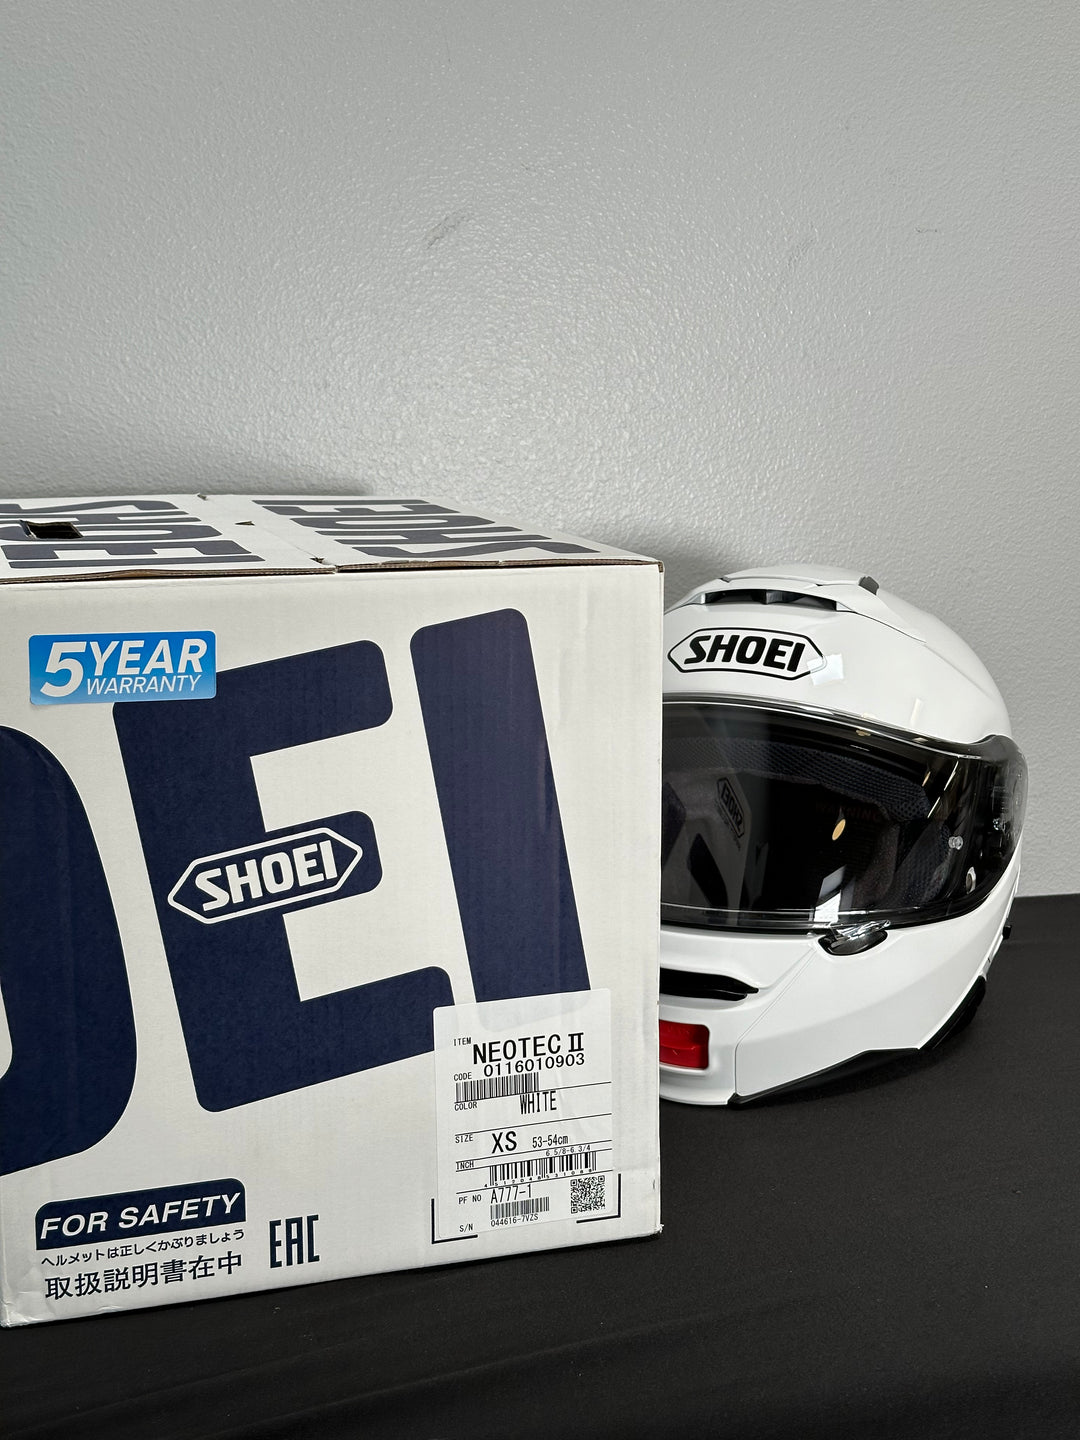 Shoei Neotec II Modular Helmet - White - Size XS OPEN BOX - Motor Psycho Sport